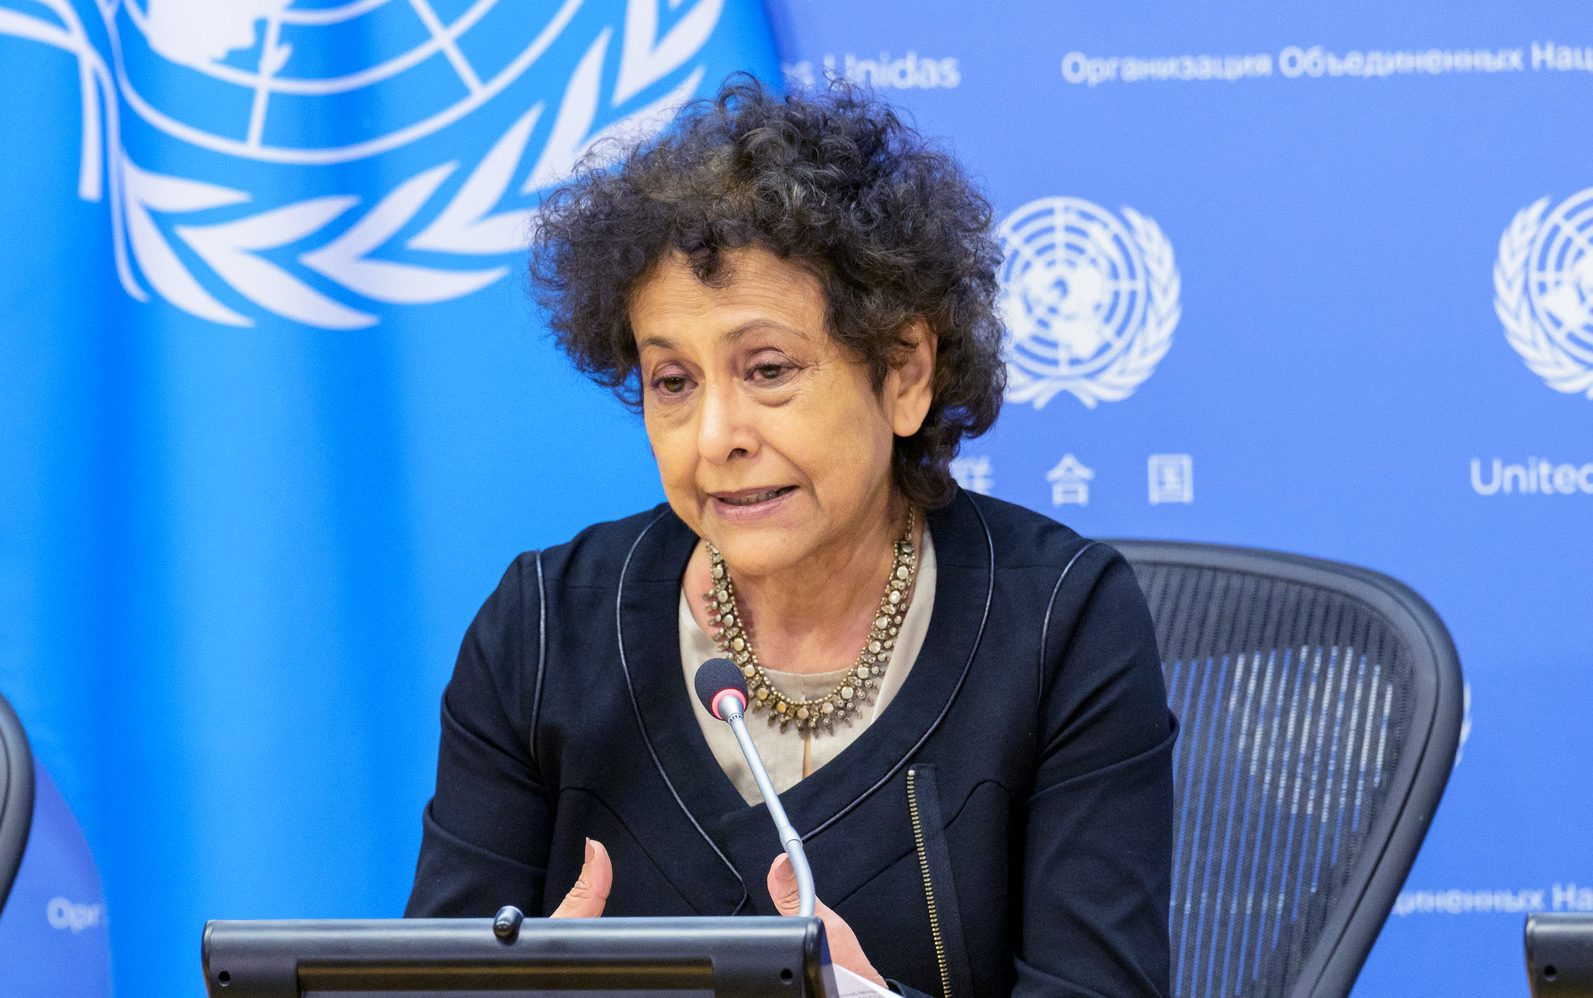 Relatora de la ONU visitará el país para abordar la libertad de opinión y expresión